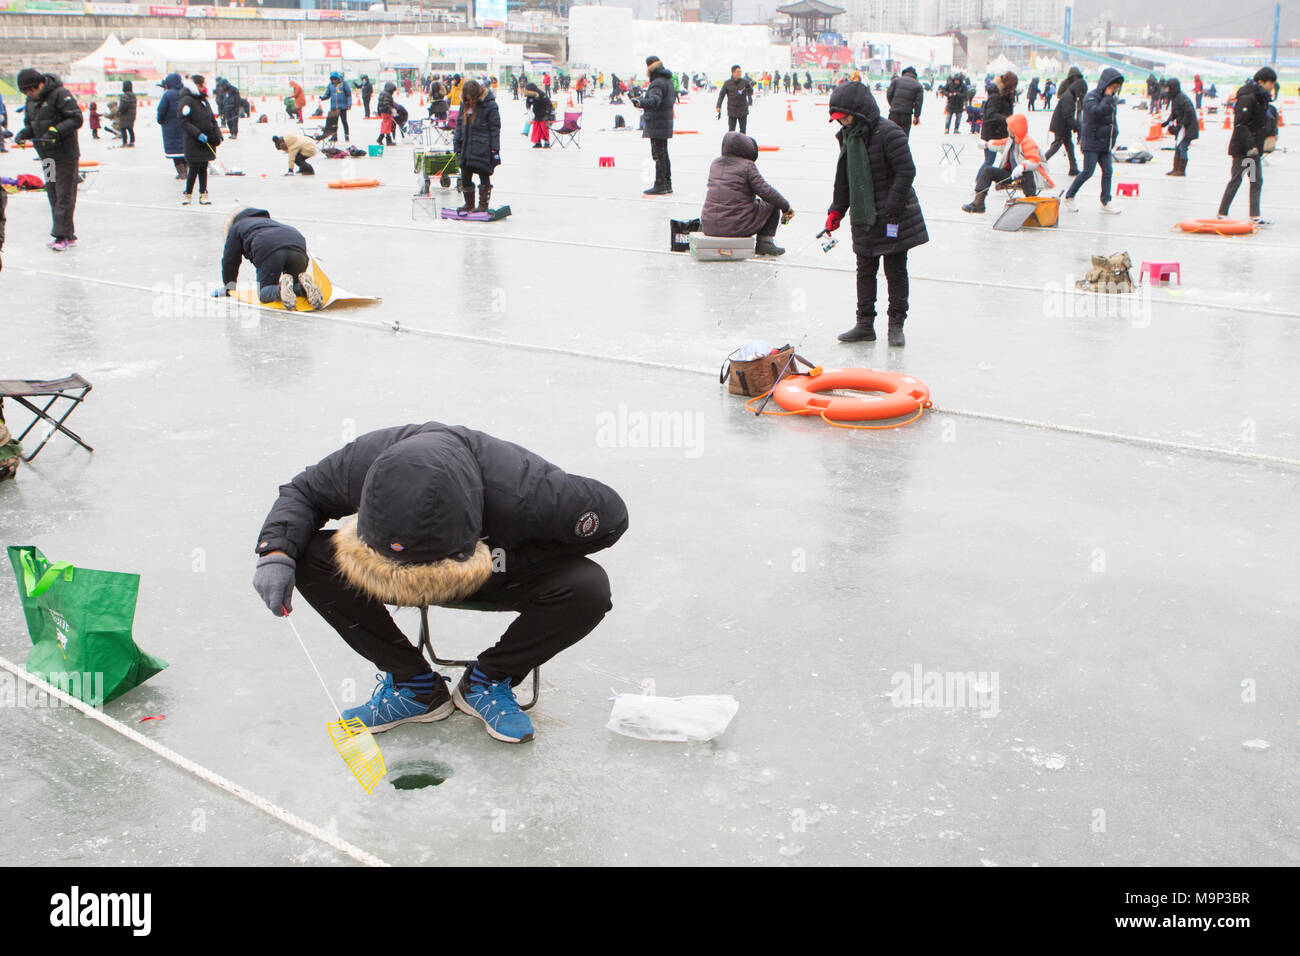 Menschen warten oben ein Loch in das Eis während der Eis angeln Festival an Hwacheon Sancheoneo in der Region Gangwon-do in Südkorea. Die Hwacheon Sancheoneo Ice Festival ist eine Tradition für die Menschen in Korea. Jedes Jahr im Januar Menschenmassen versammeln sich auf dem zugefrorenen Fluss der Kälte und dem Schnee des Winters zu feiern. Hauptattraktion ist Eisfischen. Jung und Alt warten geduldig auf ein kleines Loch im Eis für eine Forelle zu beißen. In zelten Sie können den Fisch vom Grill, nach dem sie gegessen werden. Unter anderem sind Rodeln und Eislaufen. Die in der Nähe Pyeongchang Region wird Gastgeber der Winter Stockfoto